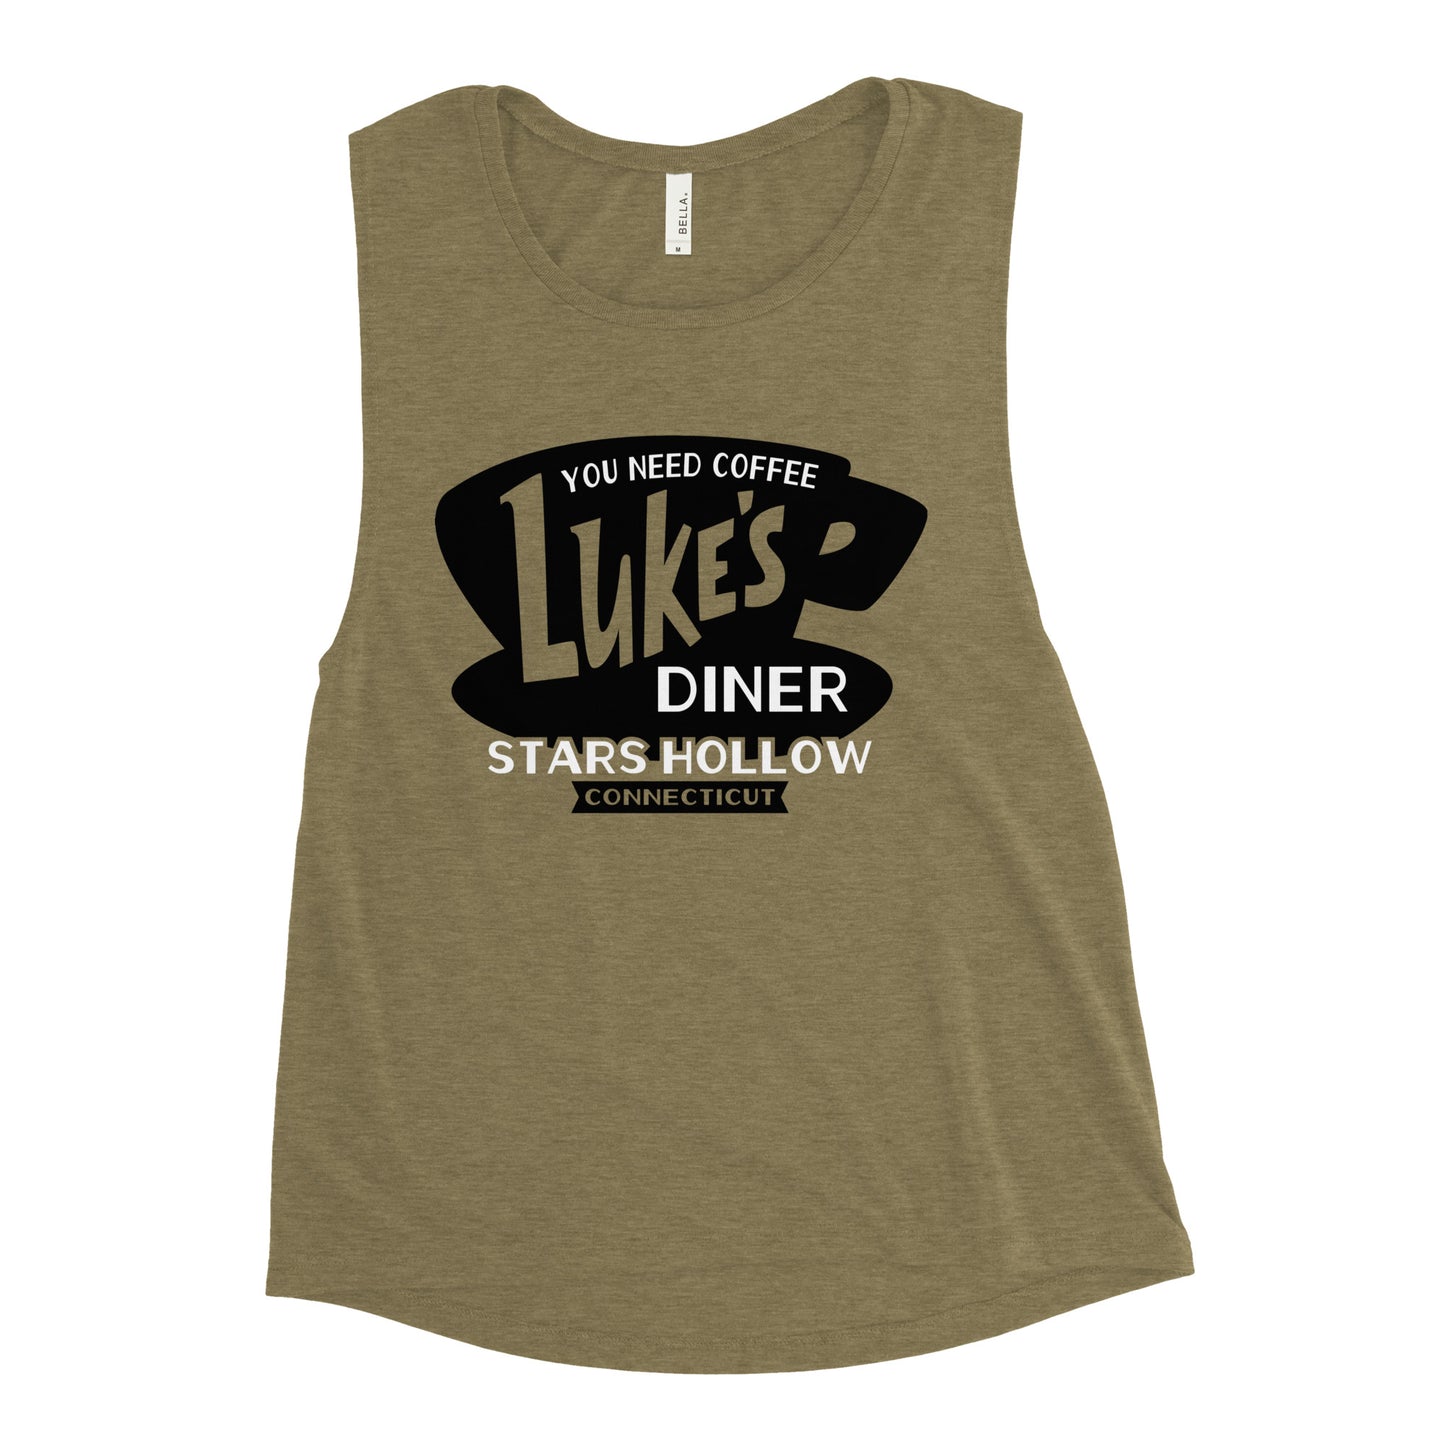 Luke's Diner Women's Muscle Tank